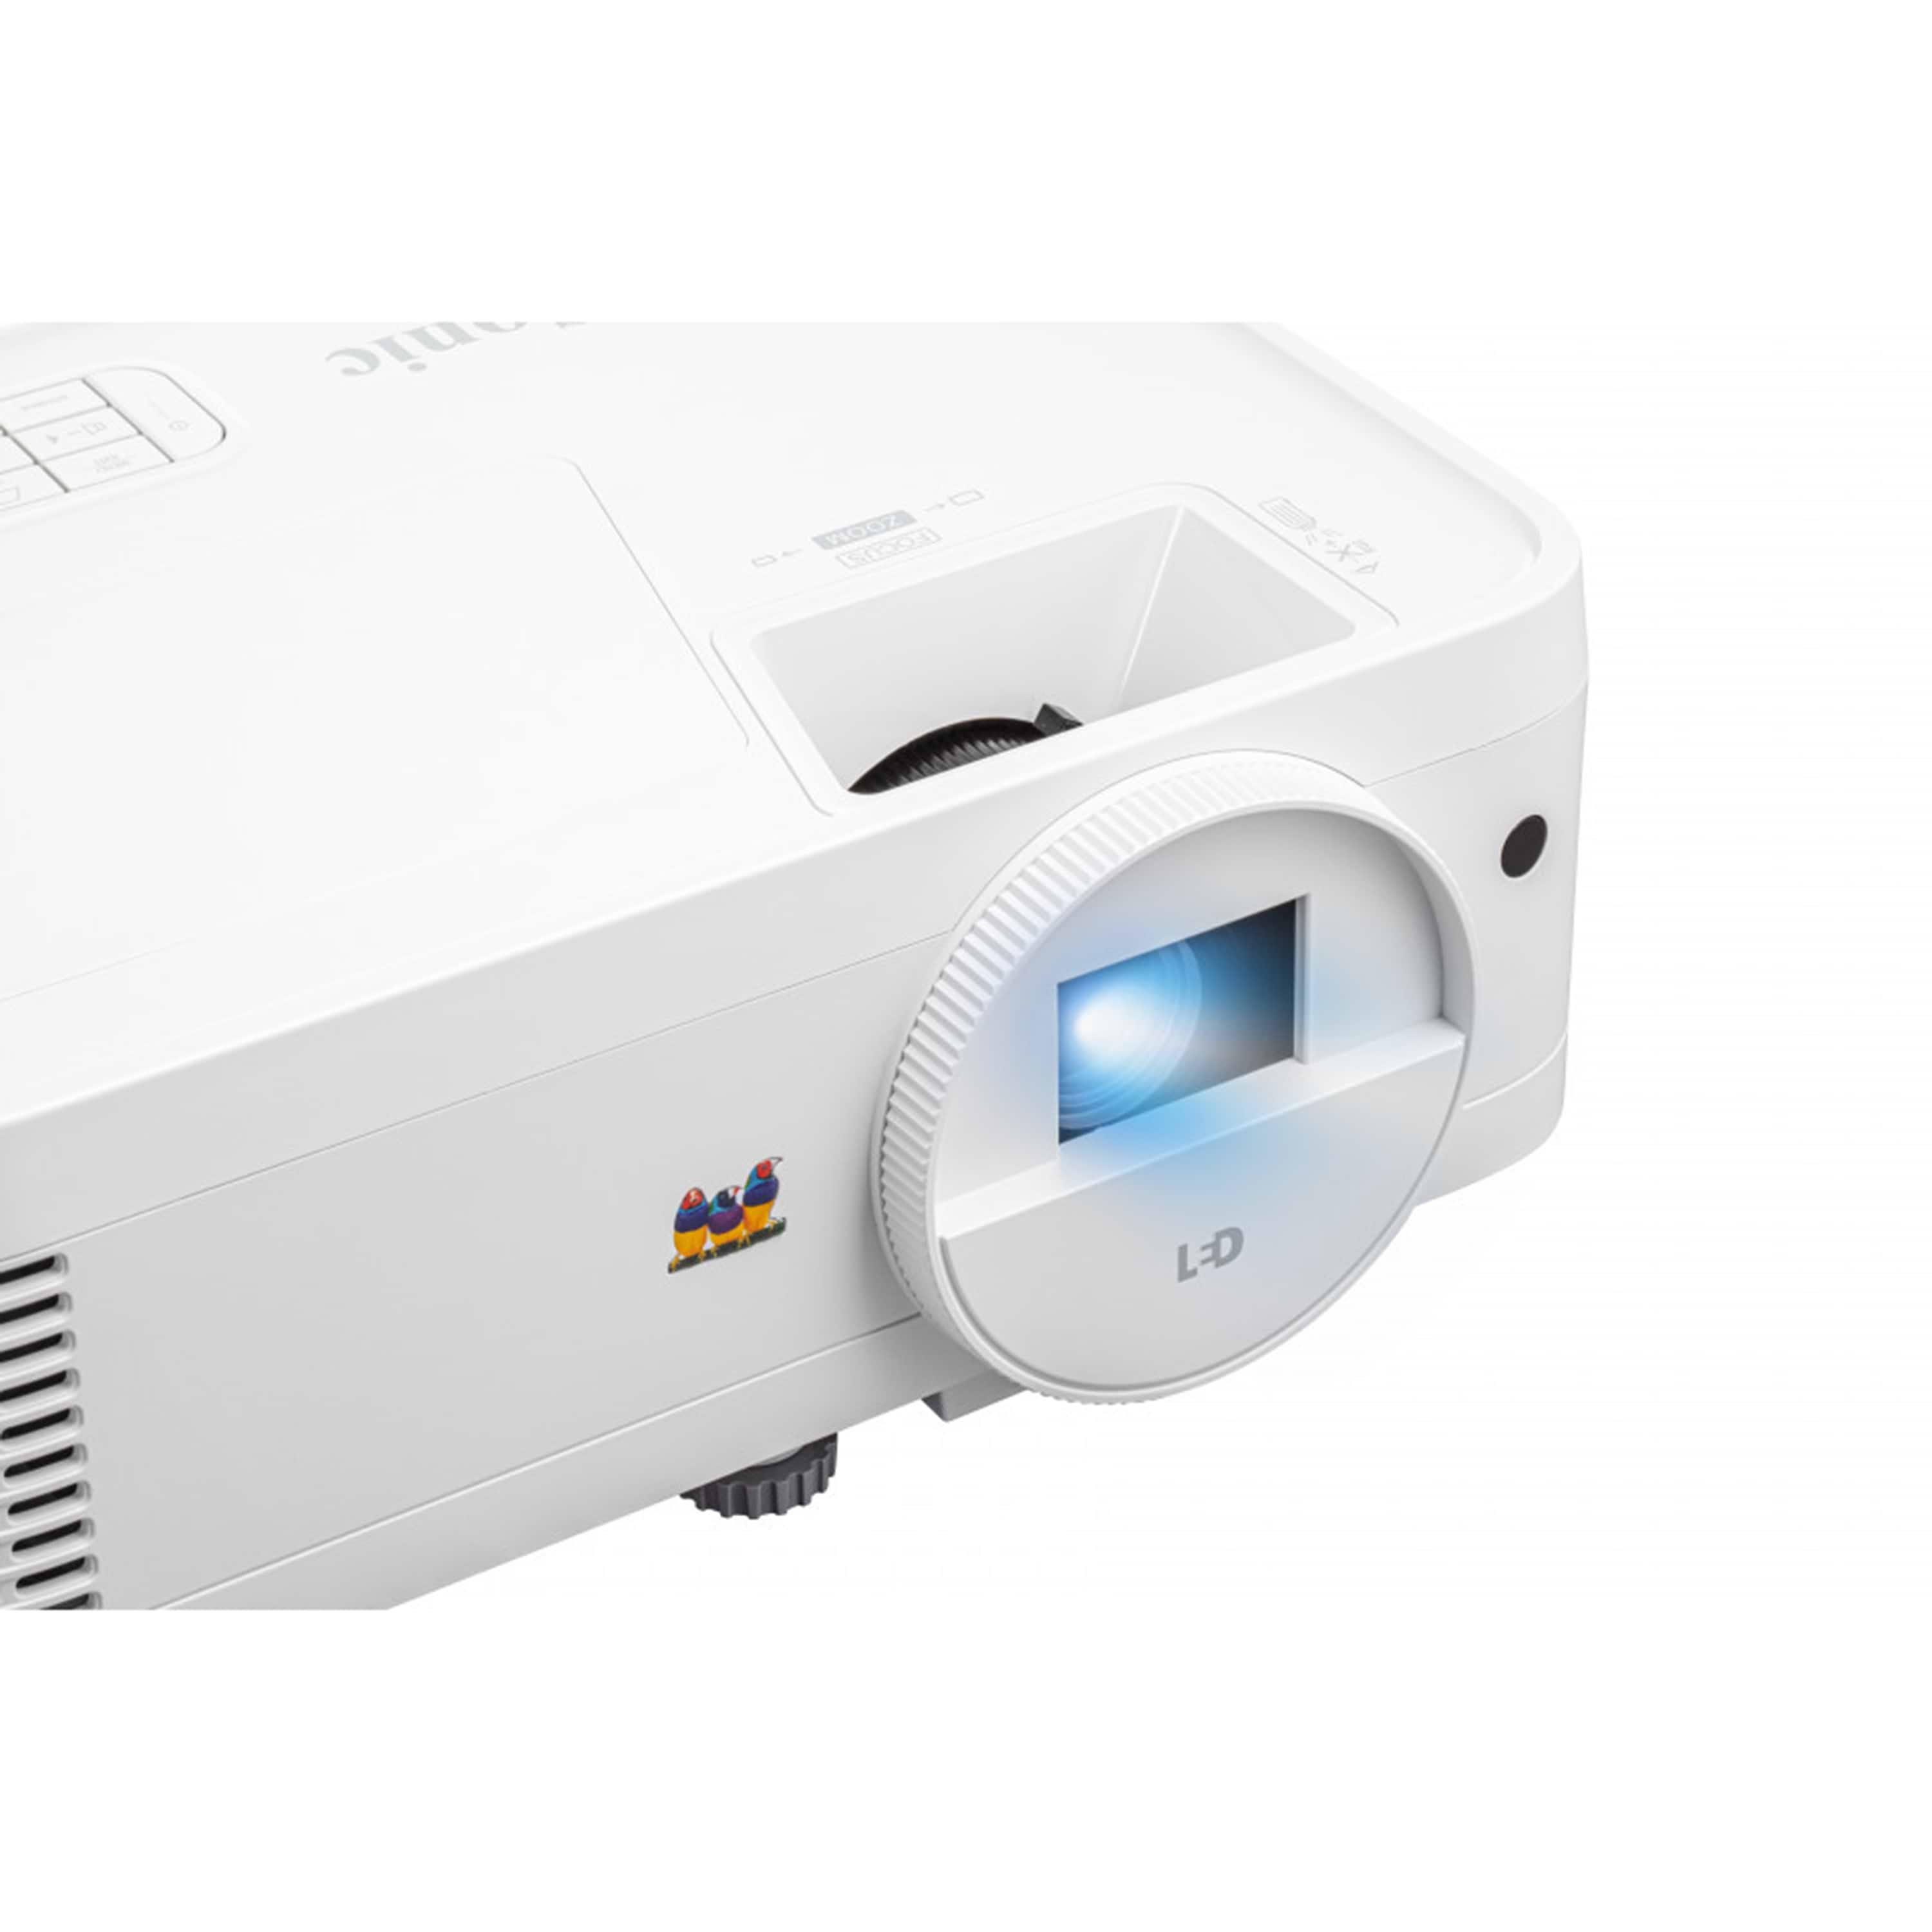 מקרן וידאו ViewSonic LS500WH 2000 ANSI Lumens WXGA LED - צבע לבן שלוש שנות אחריות ע